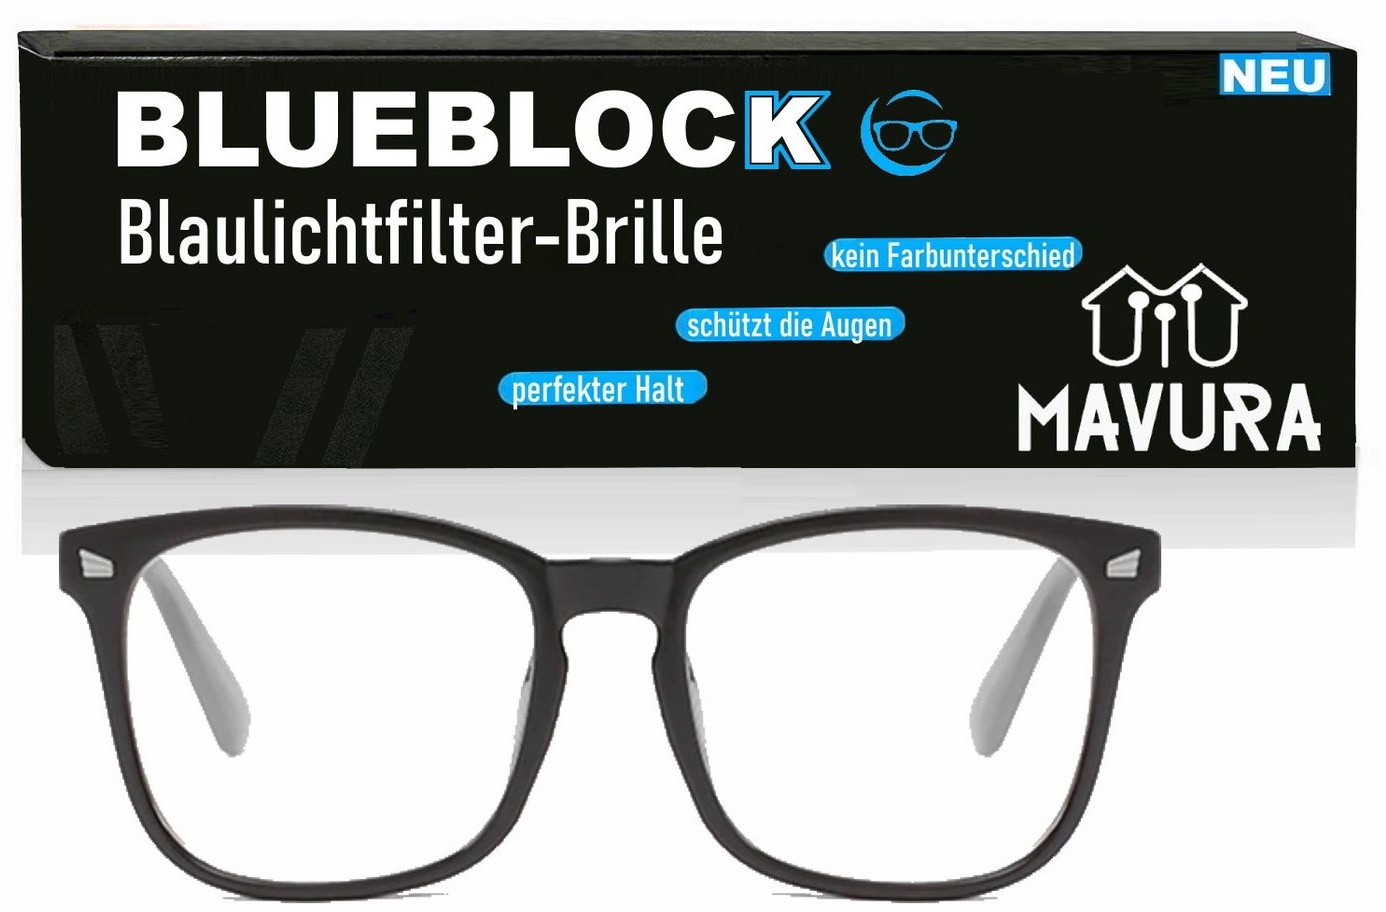 MAVURA Brille BLUEBLOCK Blaulichtfilter Computer Fernsehen Smartphone, TV Brille Anti Blaulicht Filter Lesebrille Gaming schwarz